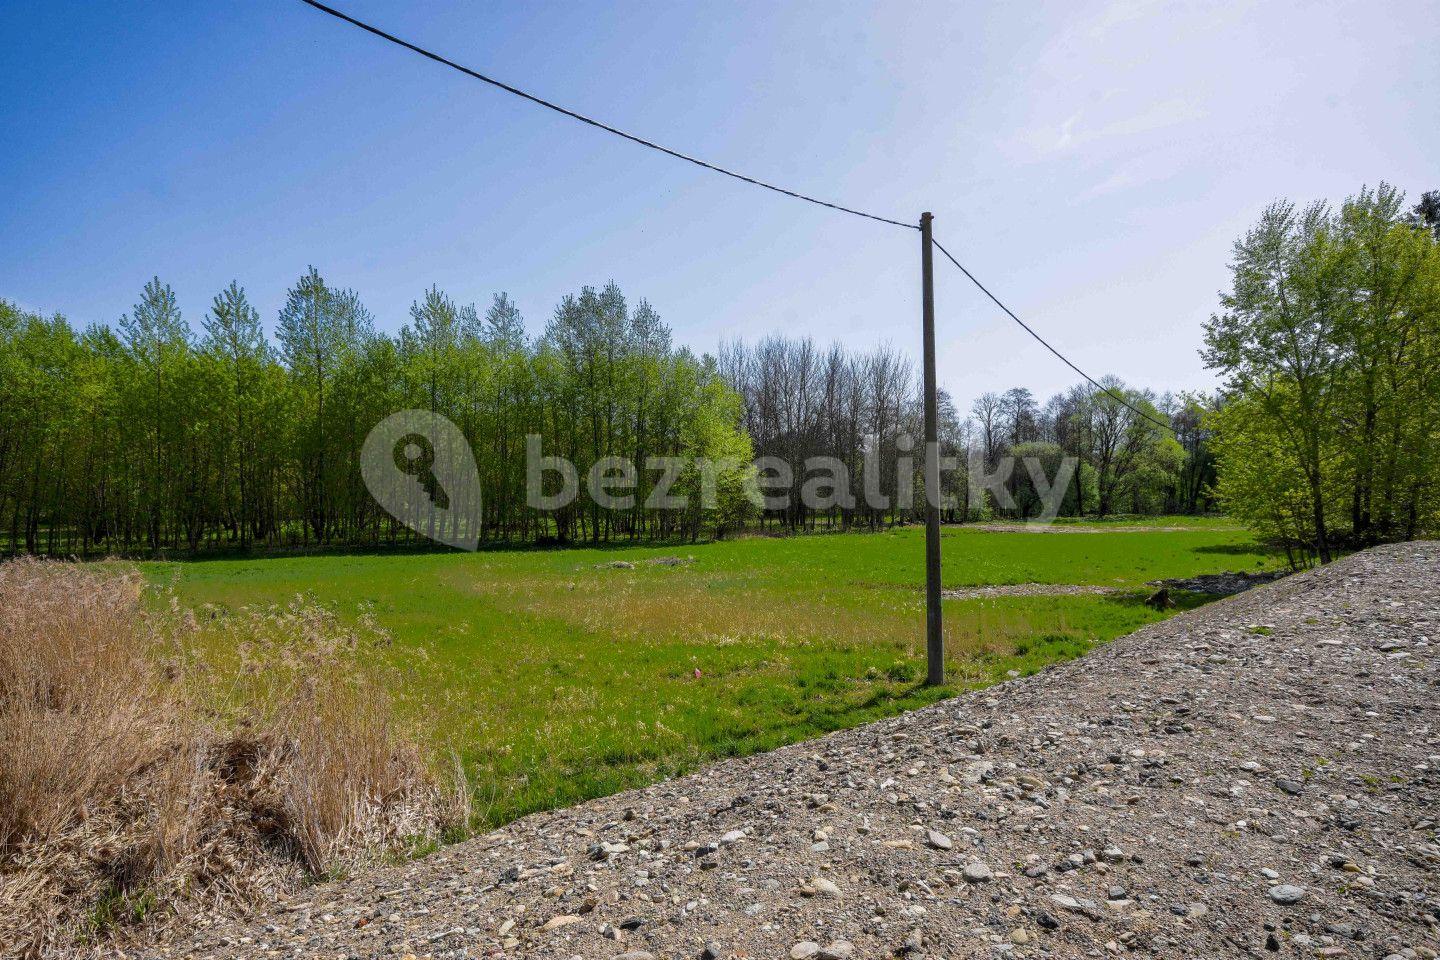 Prodej pozemku 7.544 m², Dolní Morava, Pardubický kraj